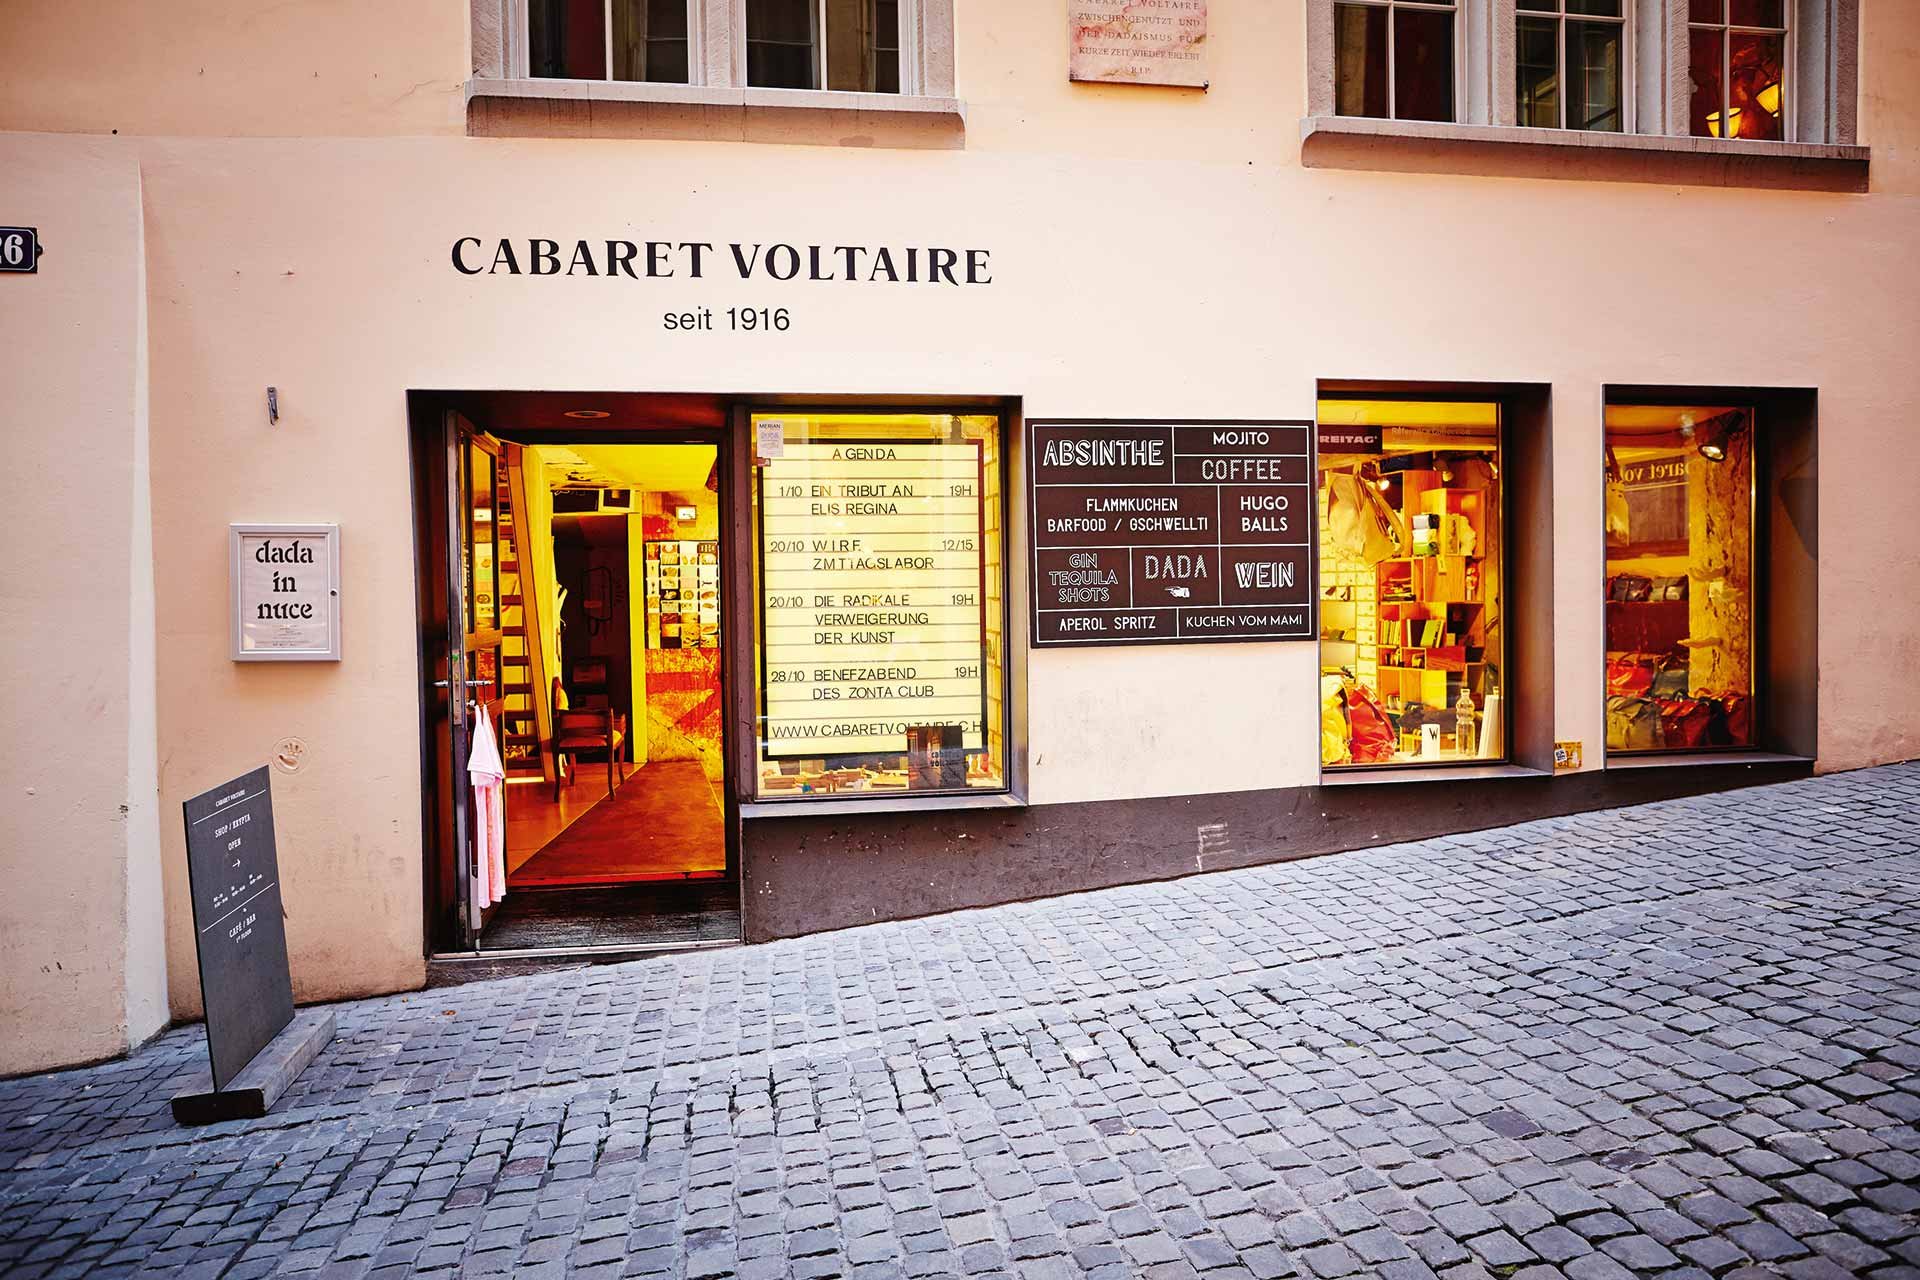 Hier wurde Kunstgeschichte geschrieben: Im Cabaret Voltaire, unweit des Kunsthauses im Niederdorf, entstand 1916 die Dada-Bewegung.